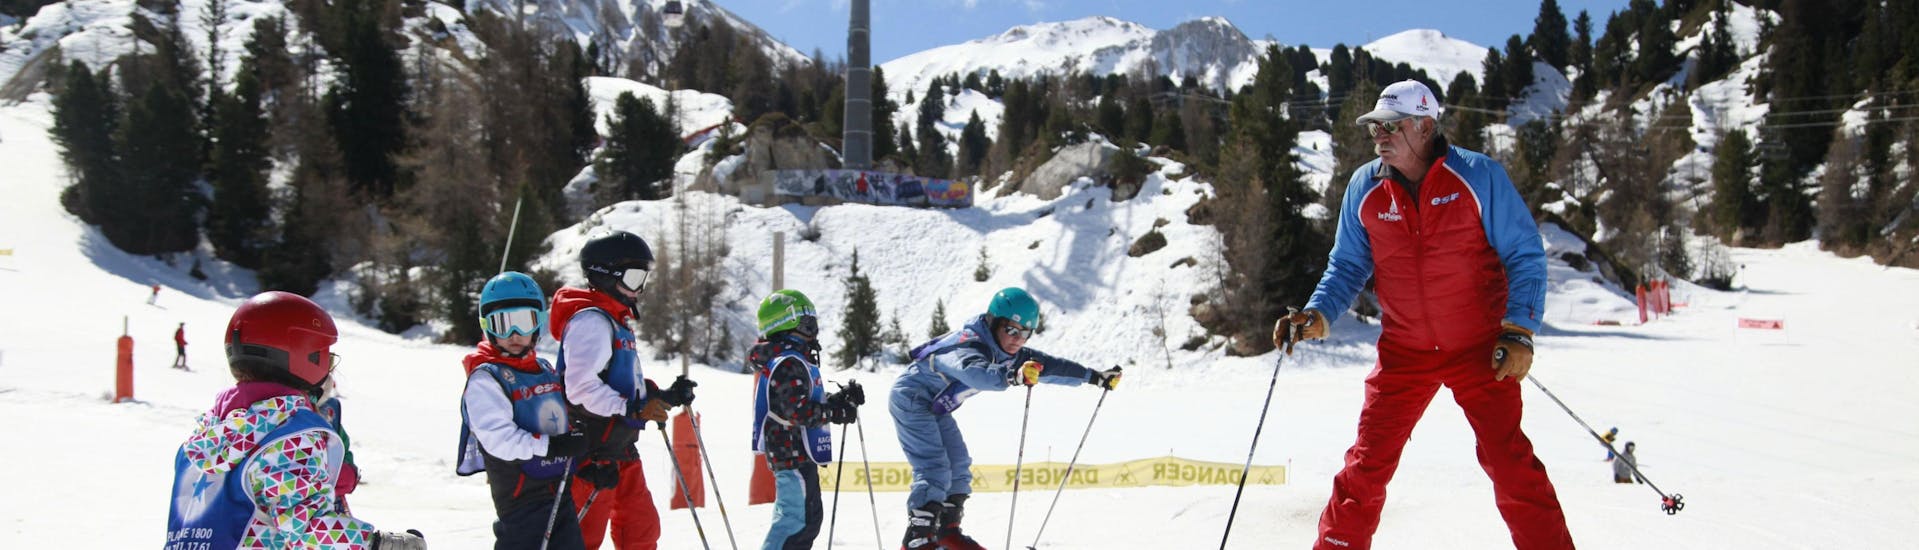 Skilessen voor kinderen vanaf 5 jaar voor alle niveaus met Skischool ESF La Plagne - Hero image